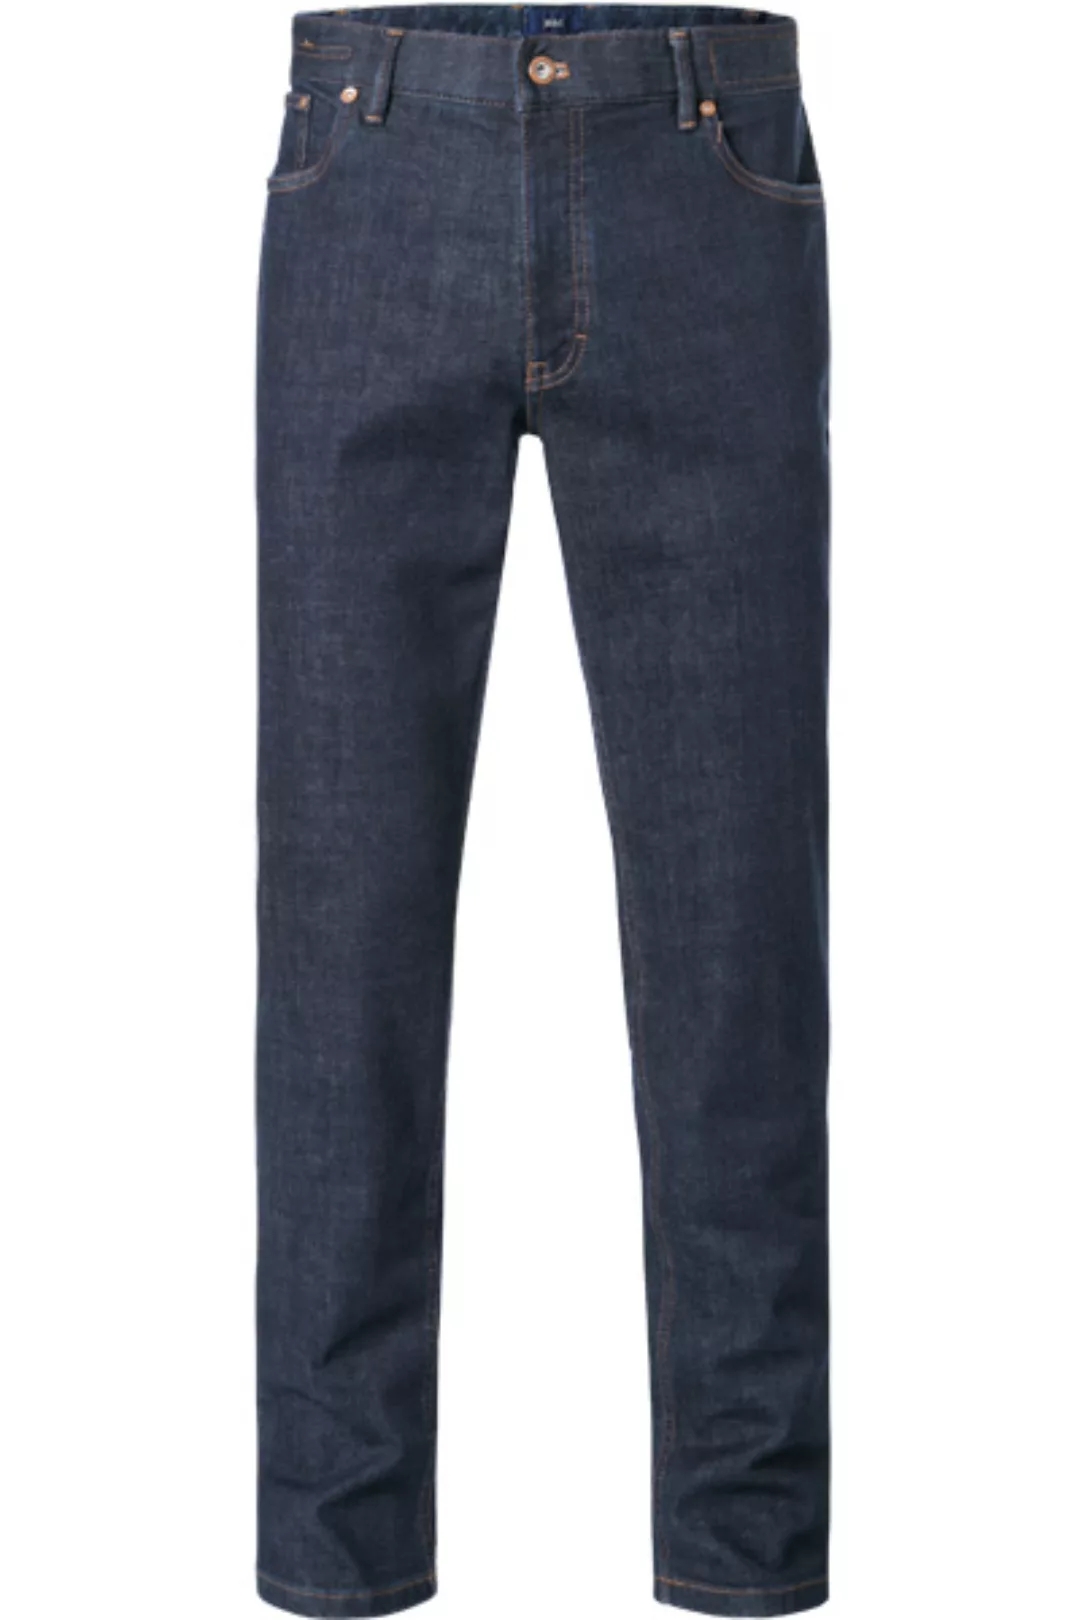 HILTL Jeans Seth 74859/41380/40 günstig online kaufen